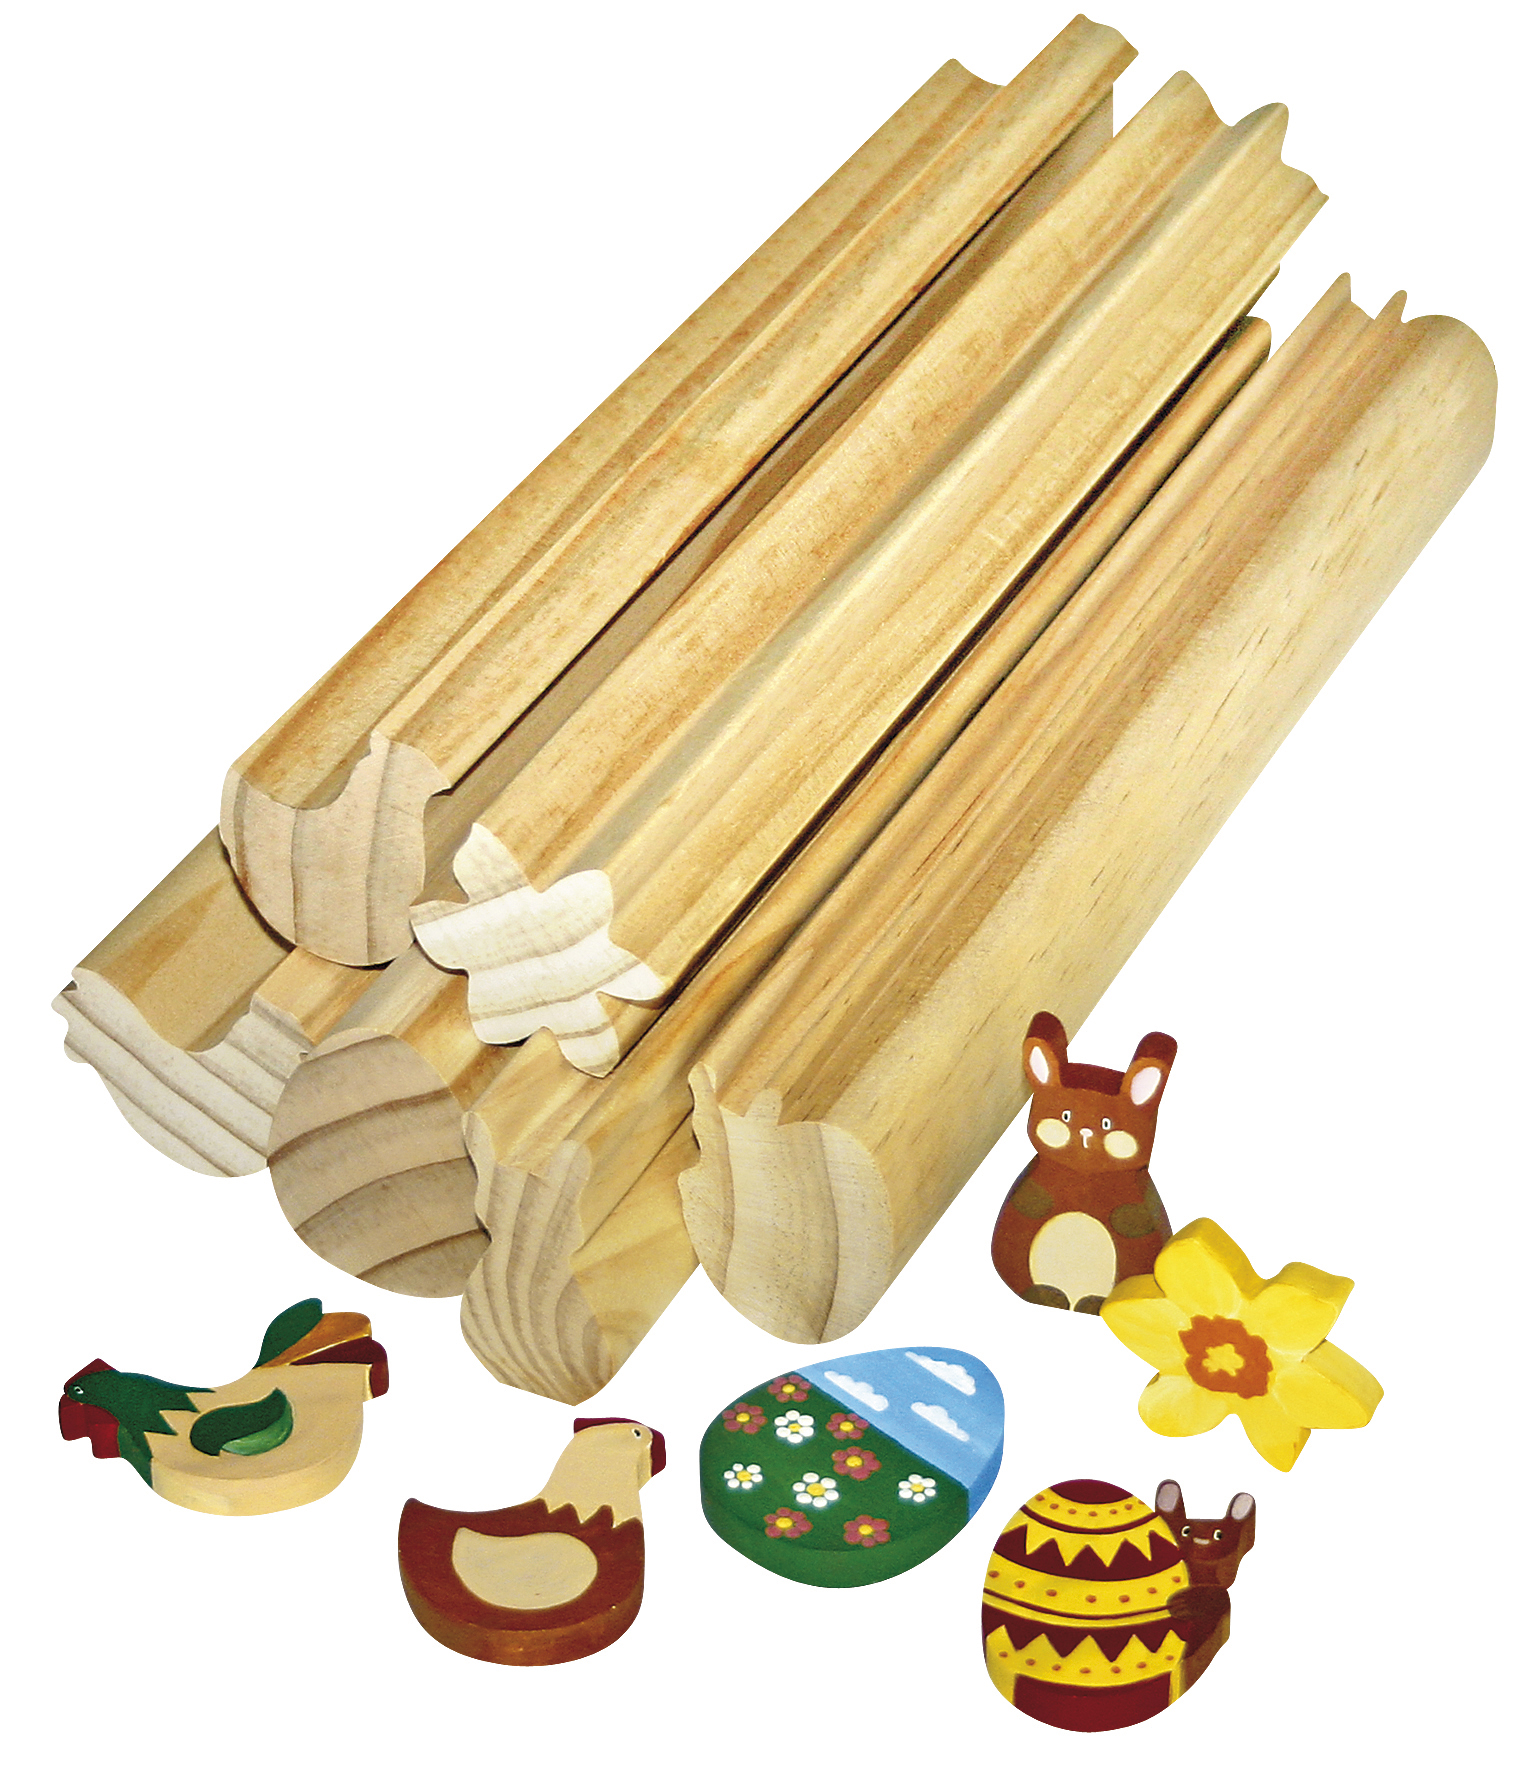 Profilholzstangen Ostern 6er Set zum selbstgestalten Basteln mit Holz